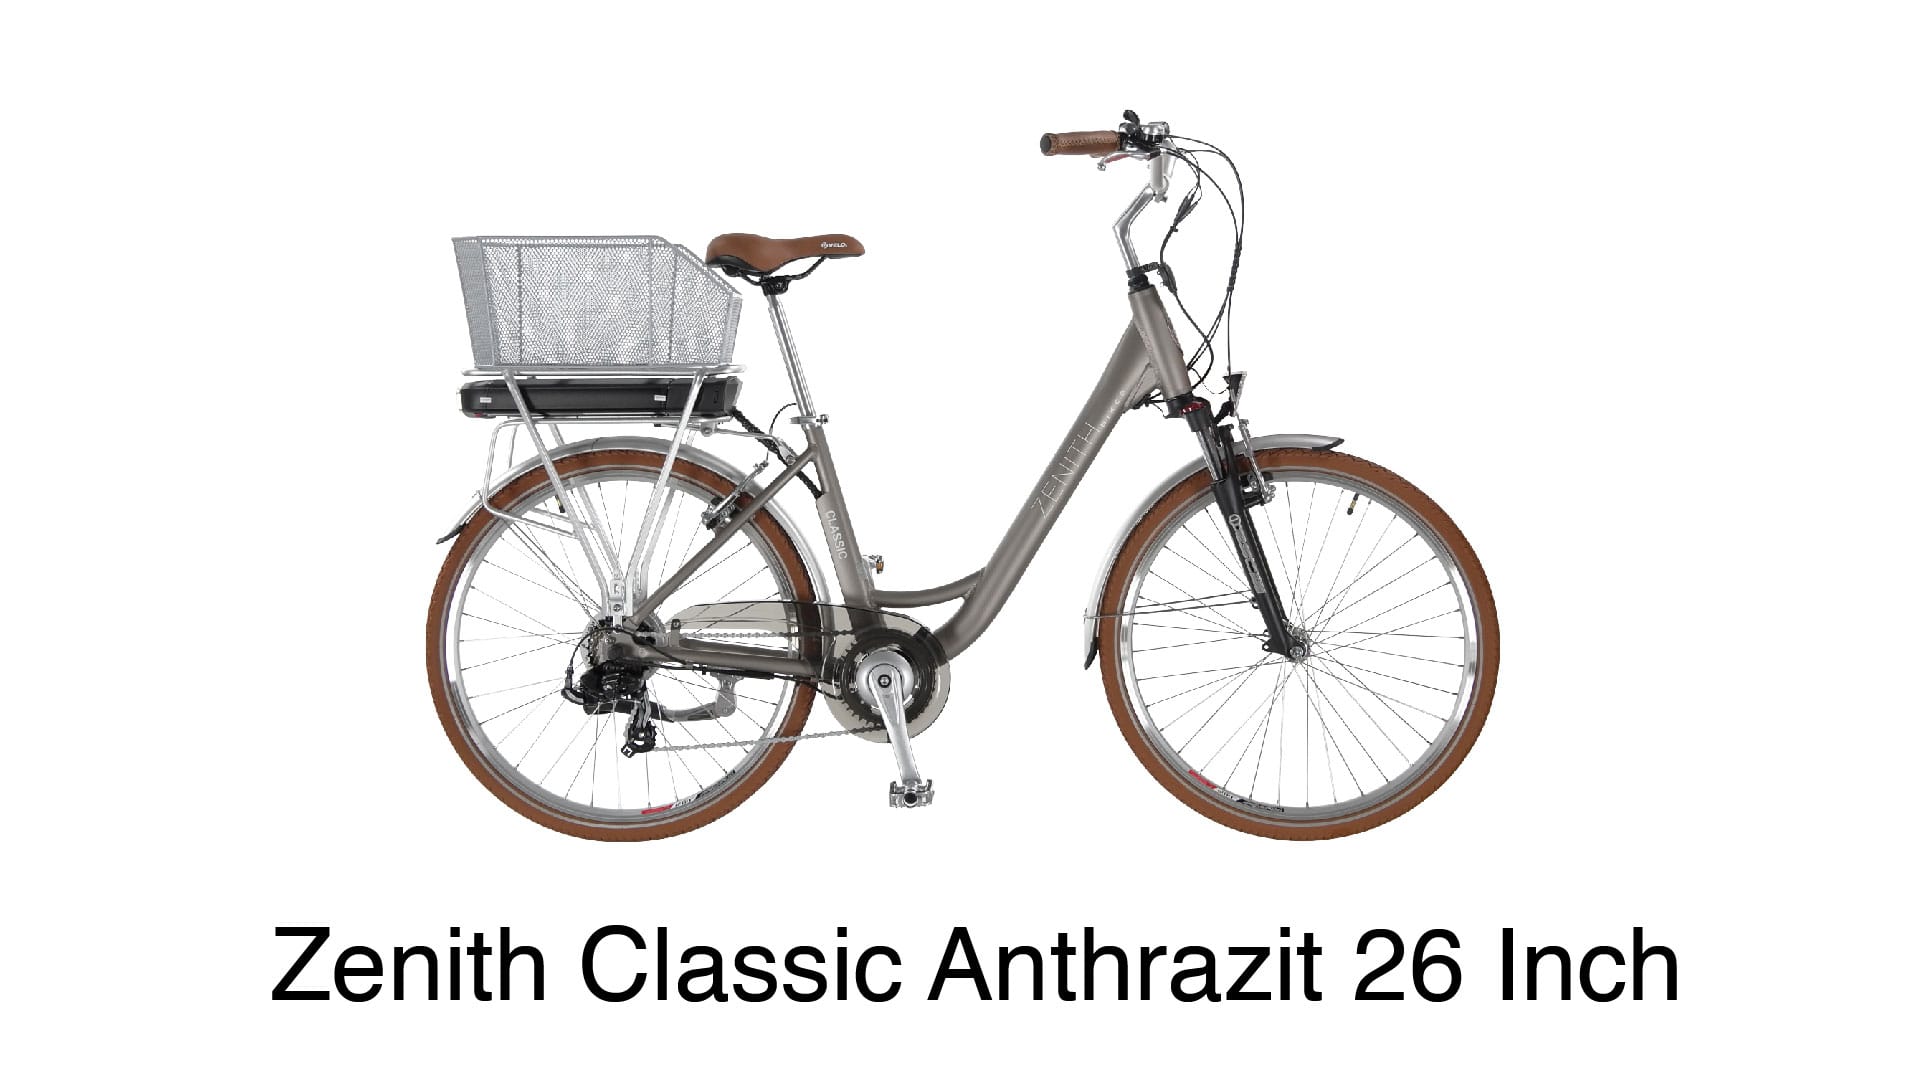 Ein Hingucker mit Lederapplikationen: Zenith Classic Anthrazit 26 Inch.